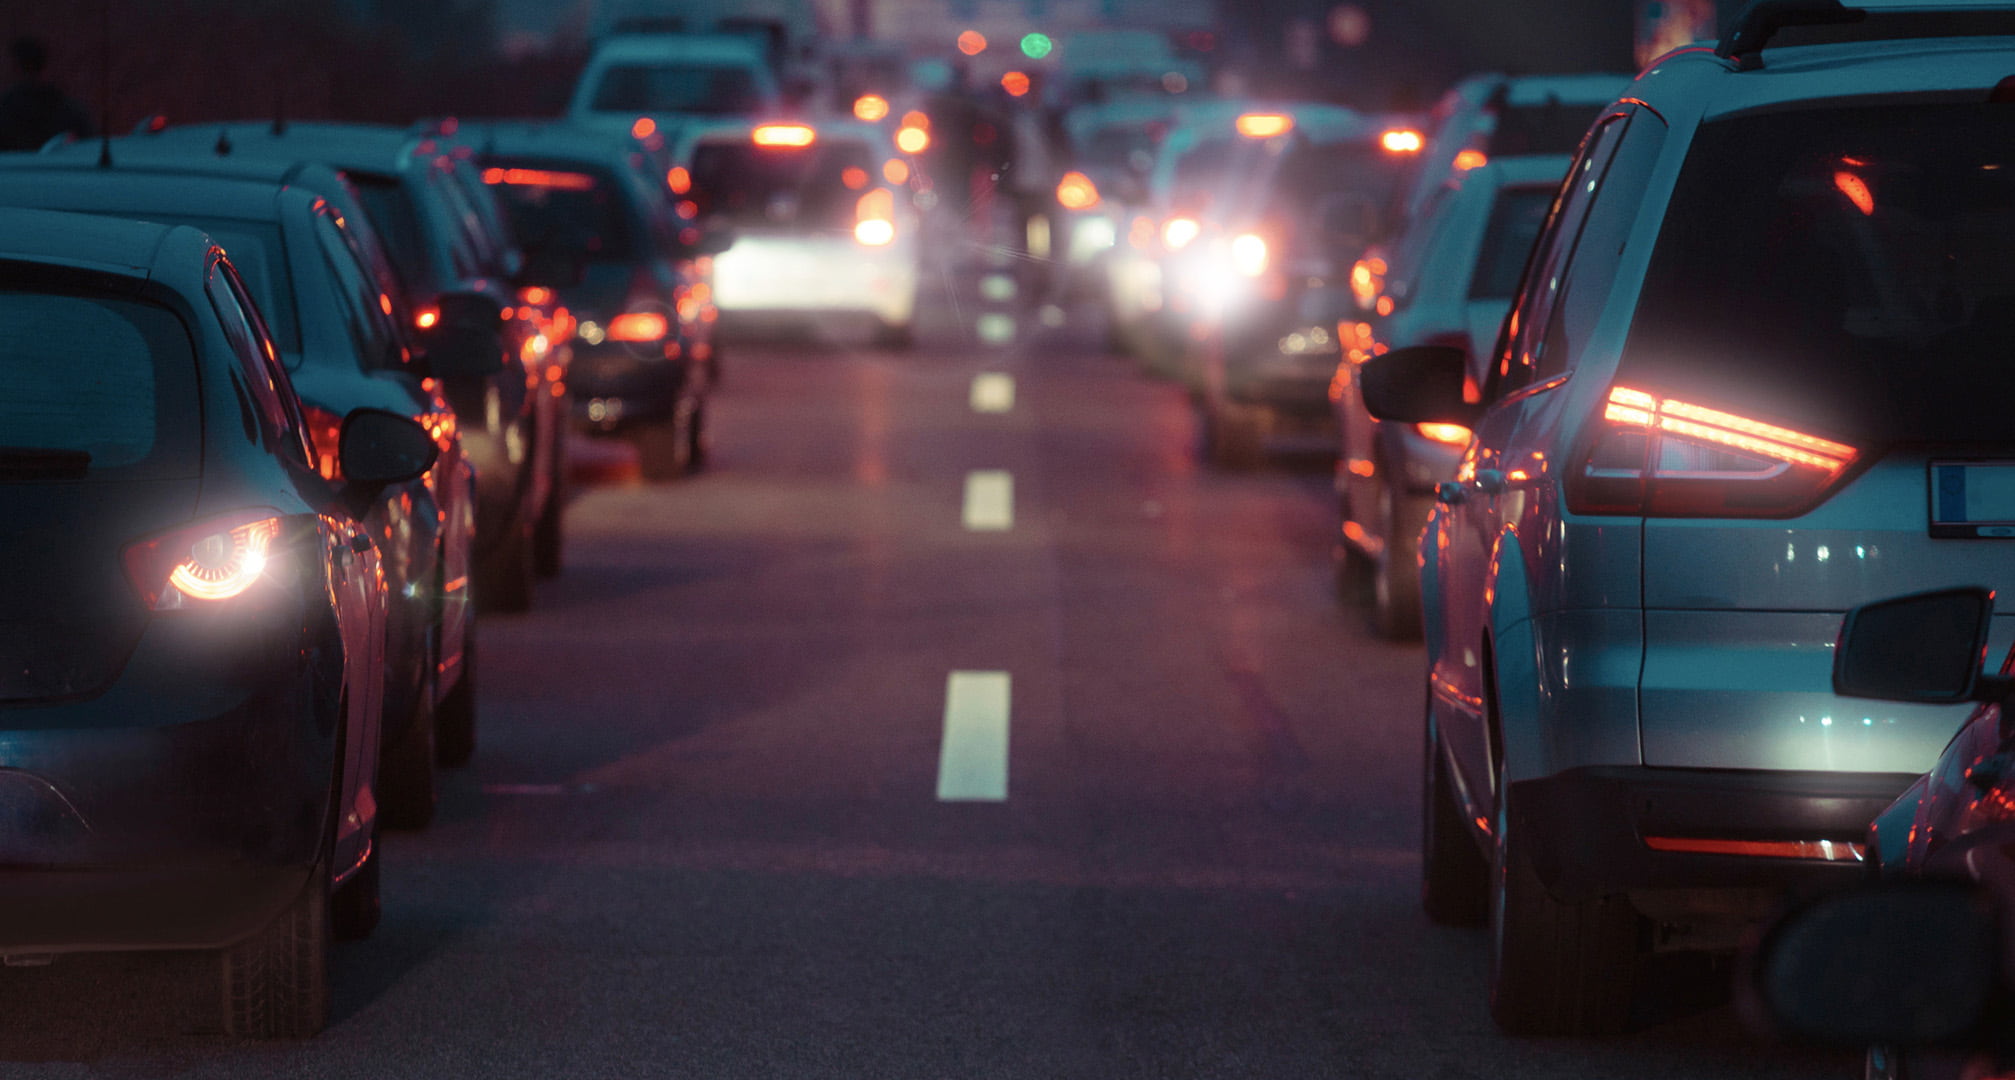 Светлинни ореоли около задните светлини на автомобила през нощта, причинени от астигматизъм (вляво). Ясни задни светлини на автомобил през нощта, наблюдавани с нормално око (вдясно)